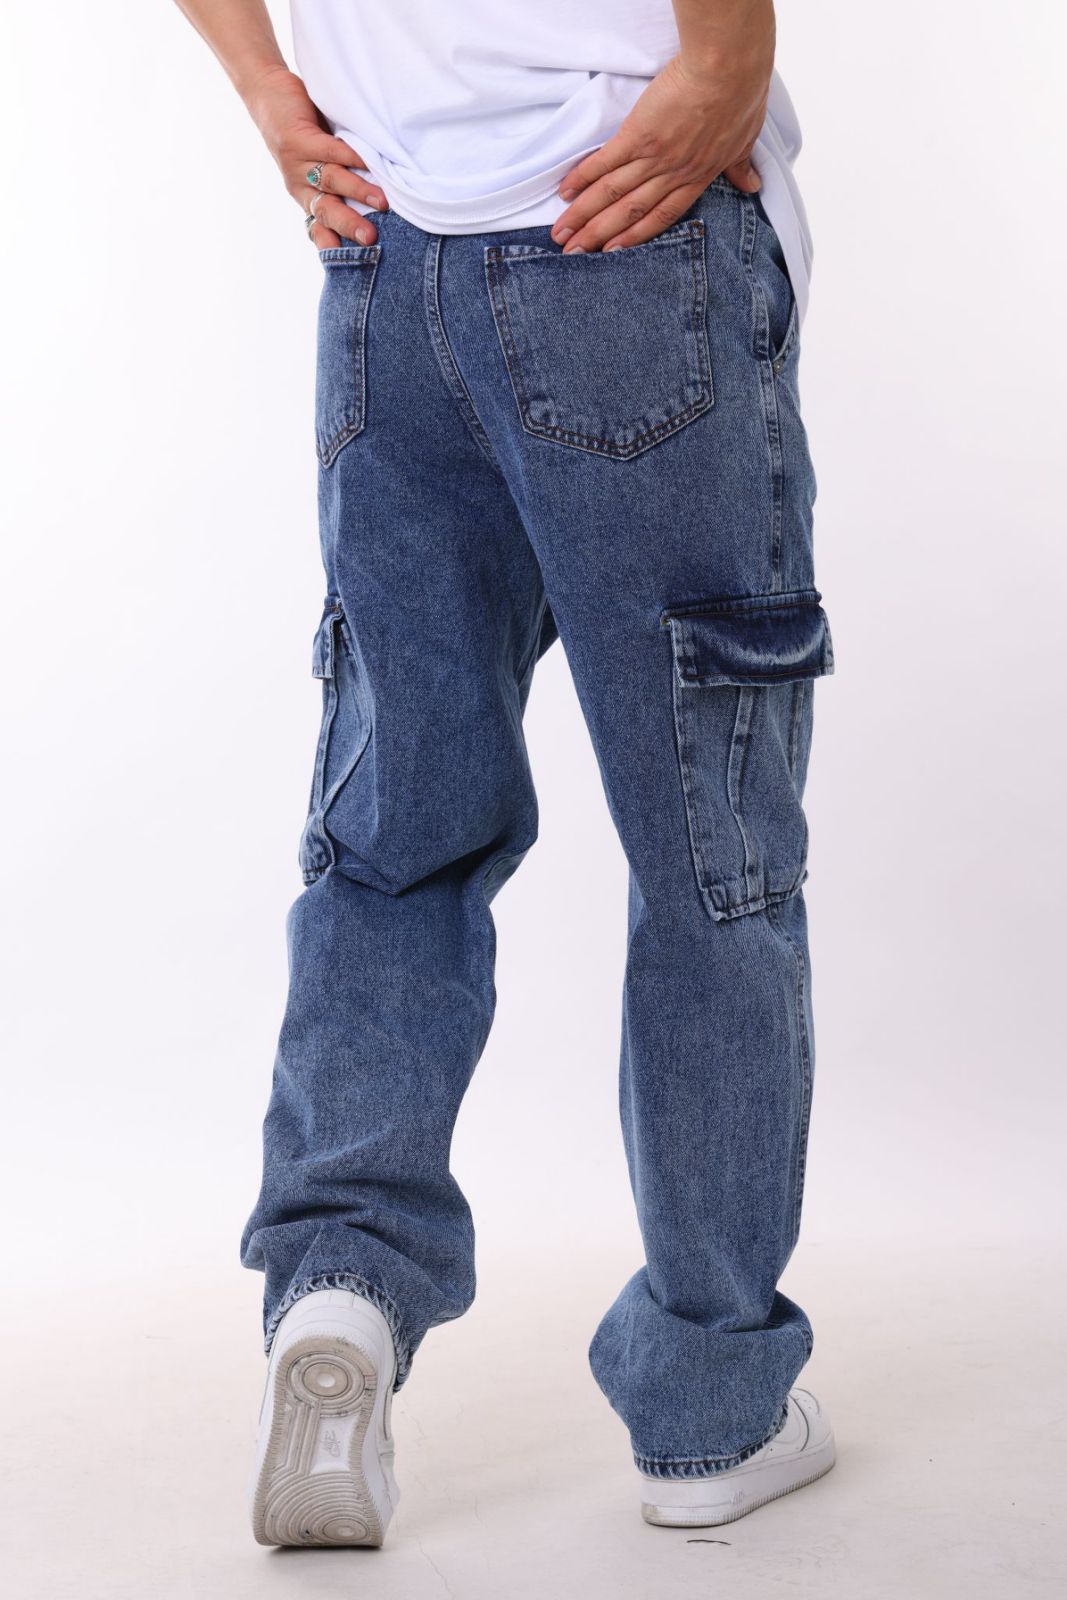 Spodnie męskie bojówki  jeans  Roz  30-38.  1 kolor . Paczka 8szt